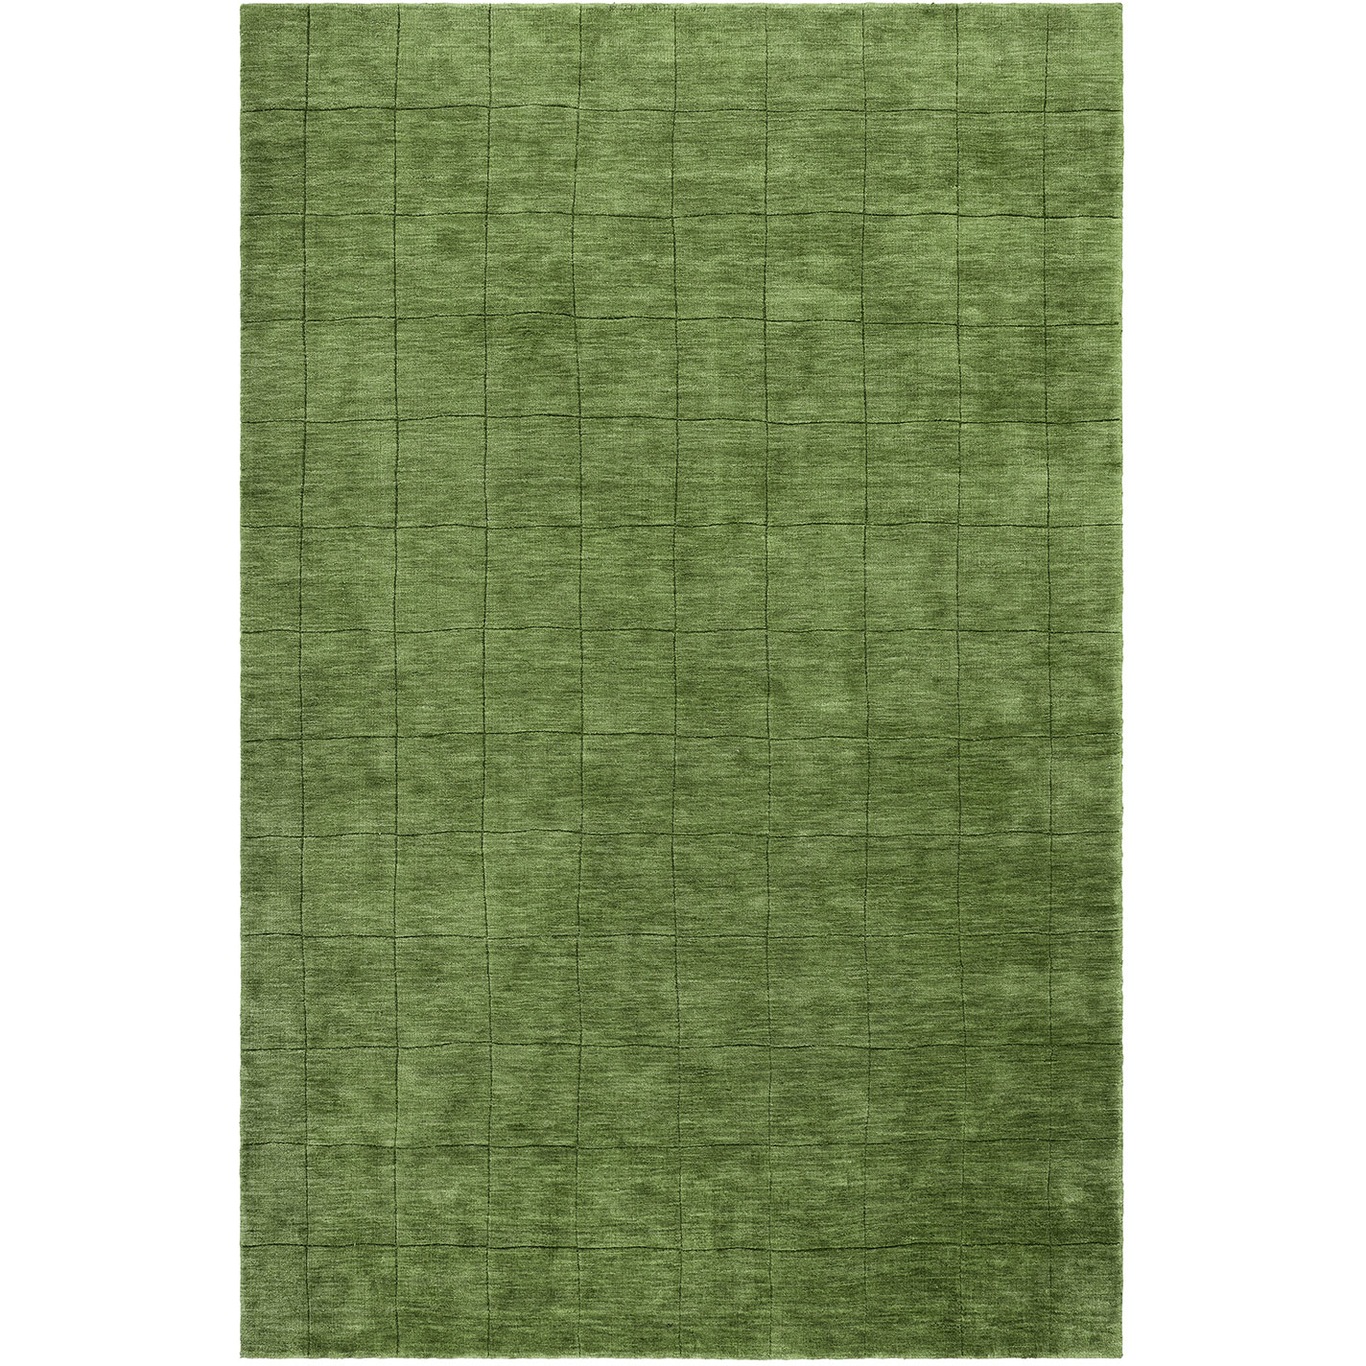 Nari Teppich Cactus Green, 170x240 cm